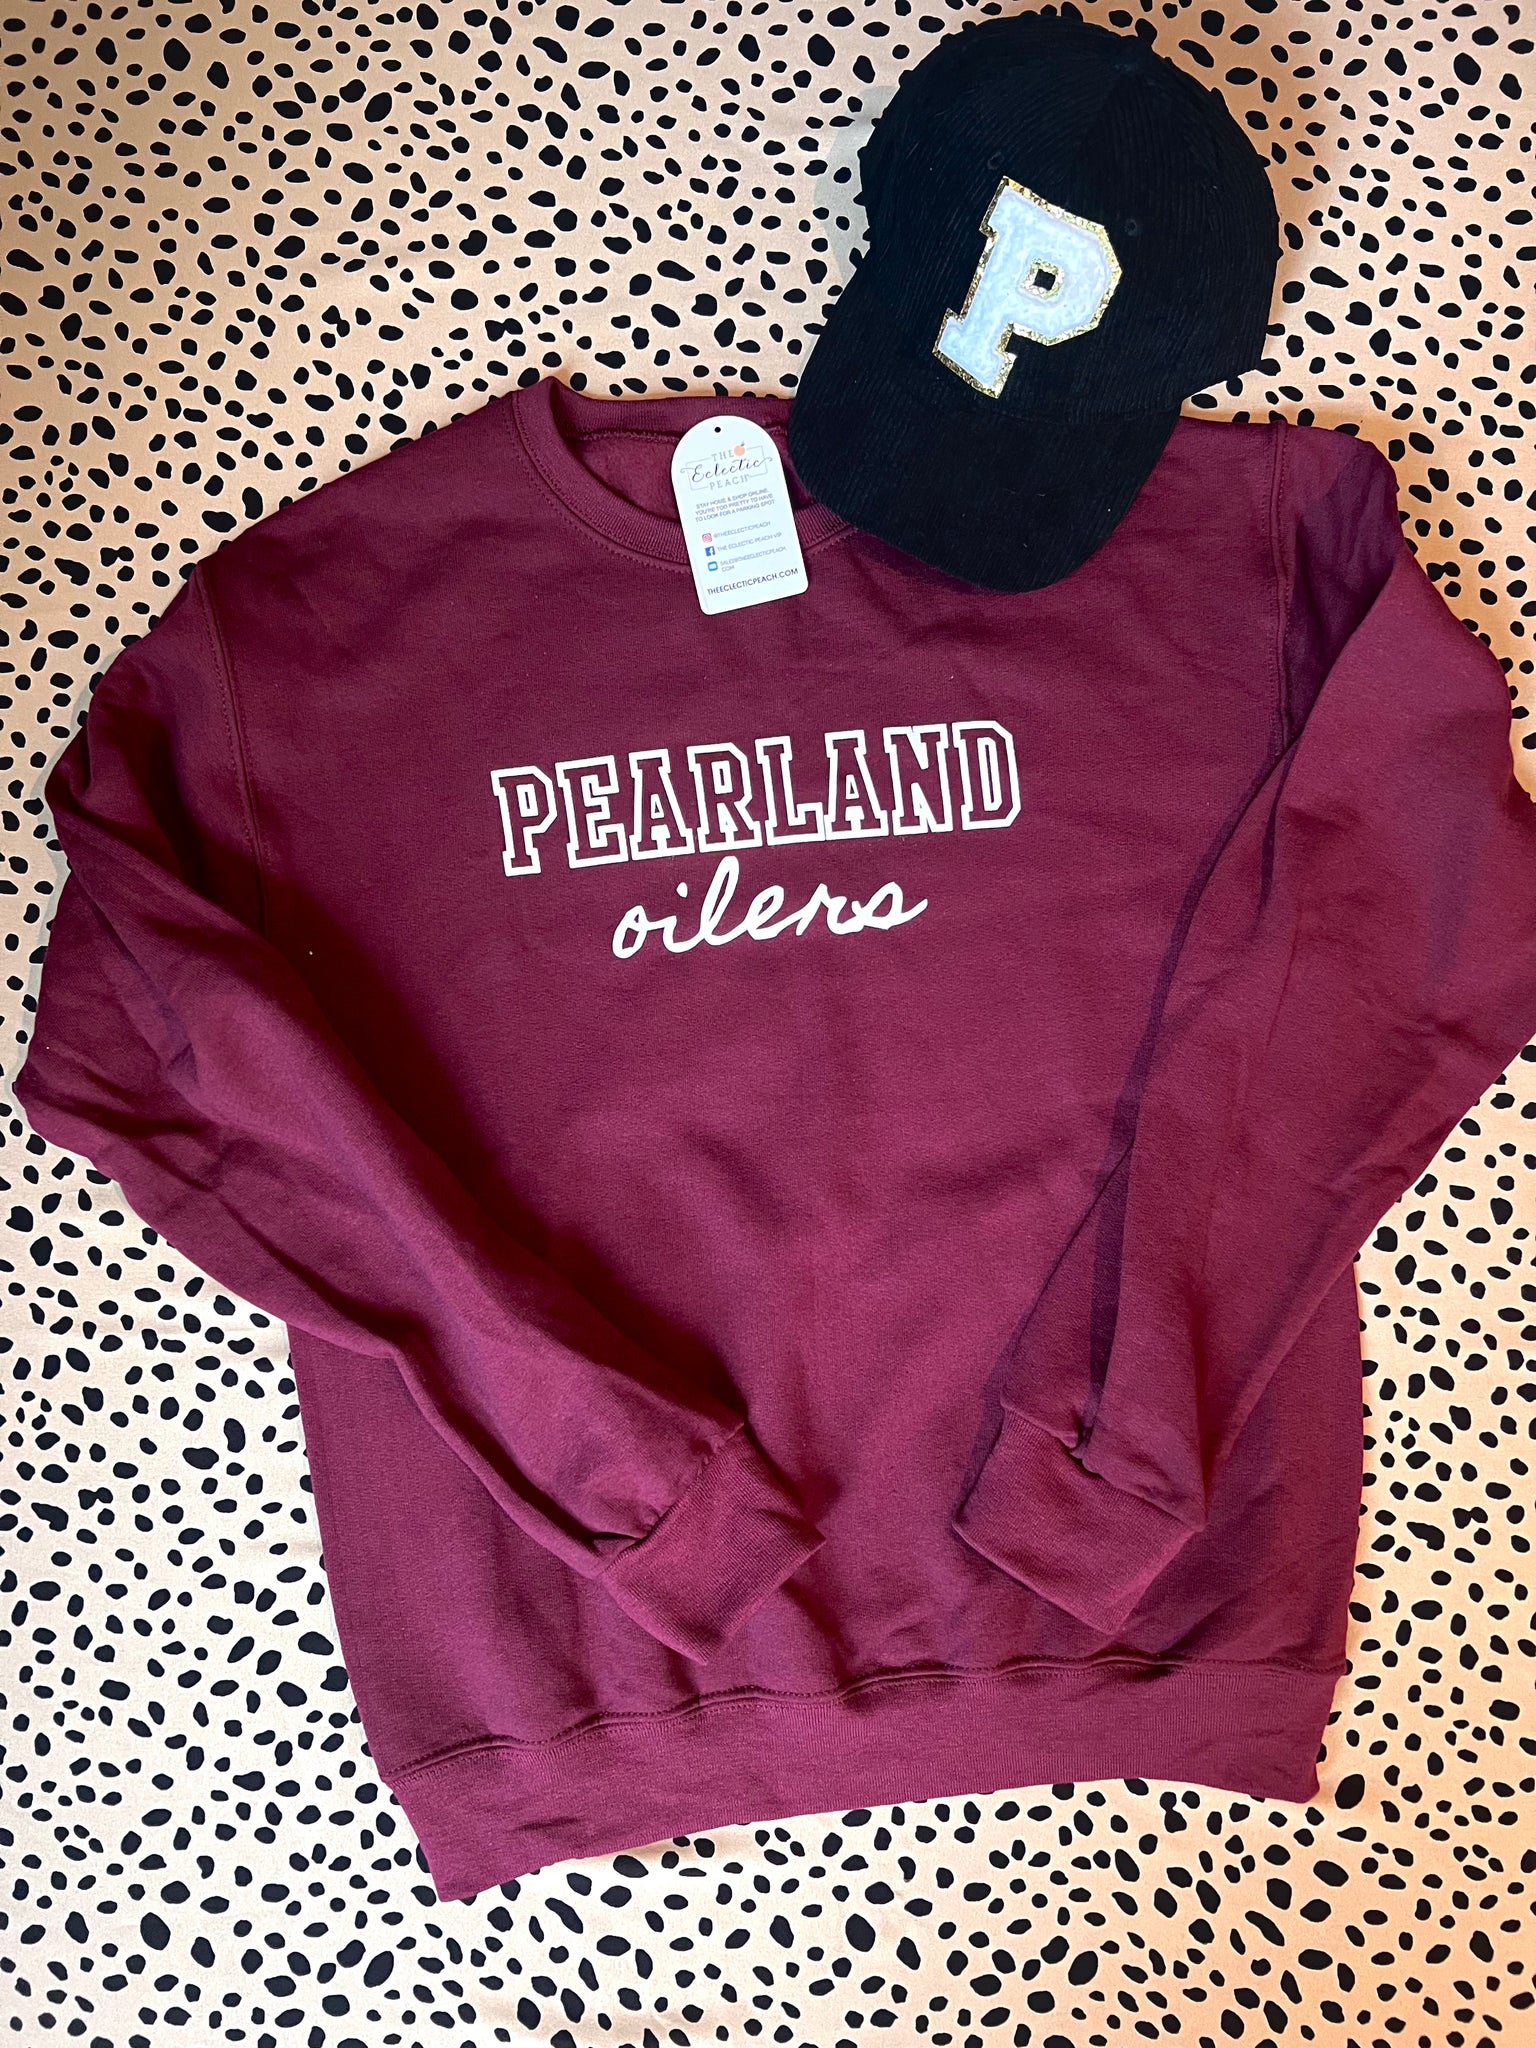 Pearland Oilers Sweatshirt